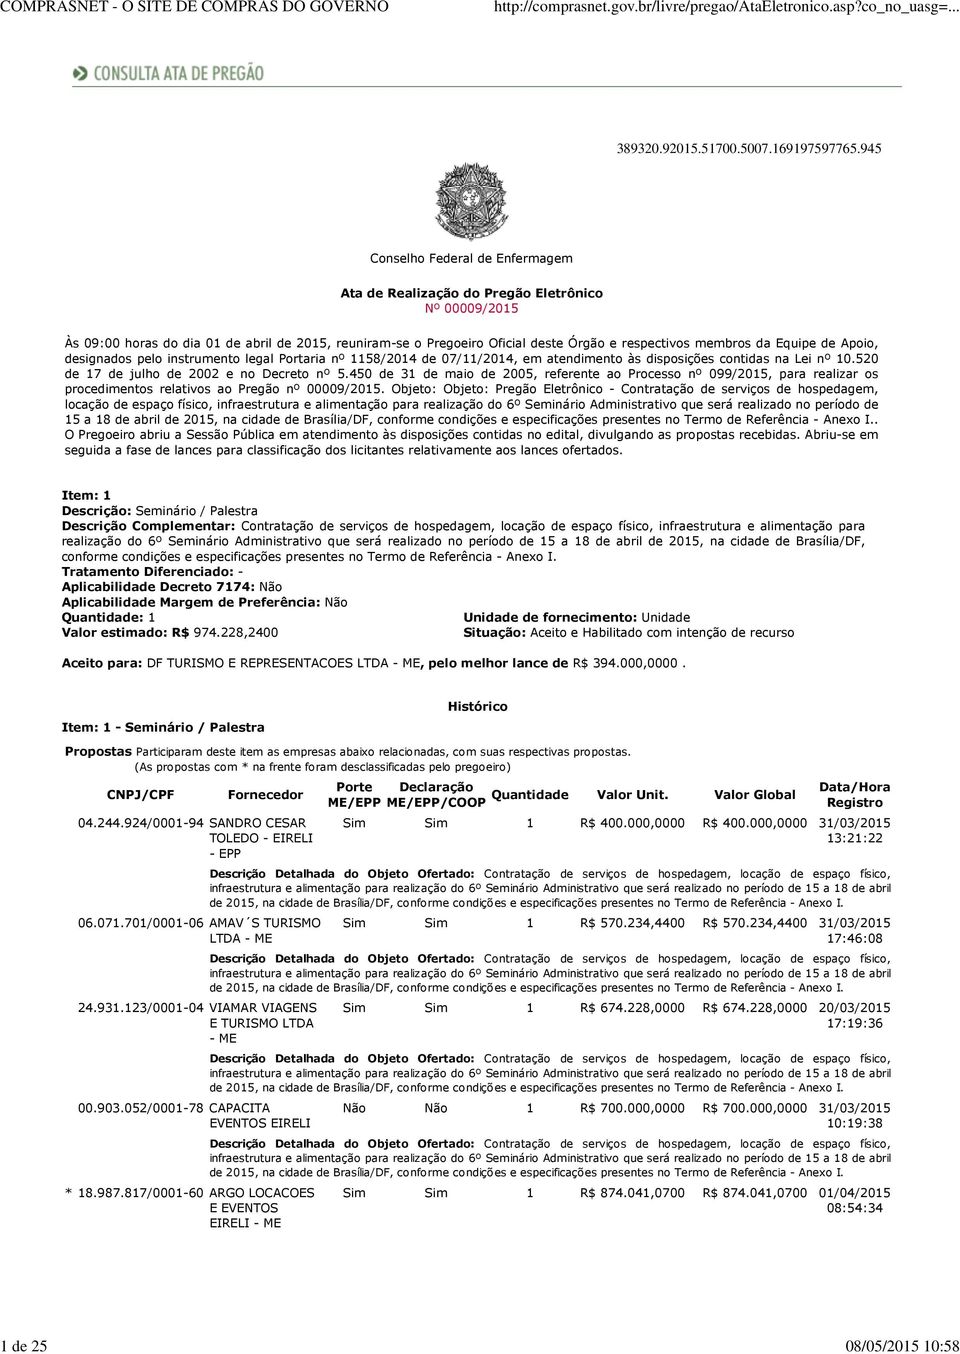 Equipe de Apoio, designados pelo instrumento legal Portaria nº 1158/2014 de 07/11/2014, em atendimento às disposições contidas na Lei nº 10.520 de 17 de julho de 2002 e no Decreto nº 5.